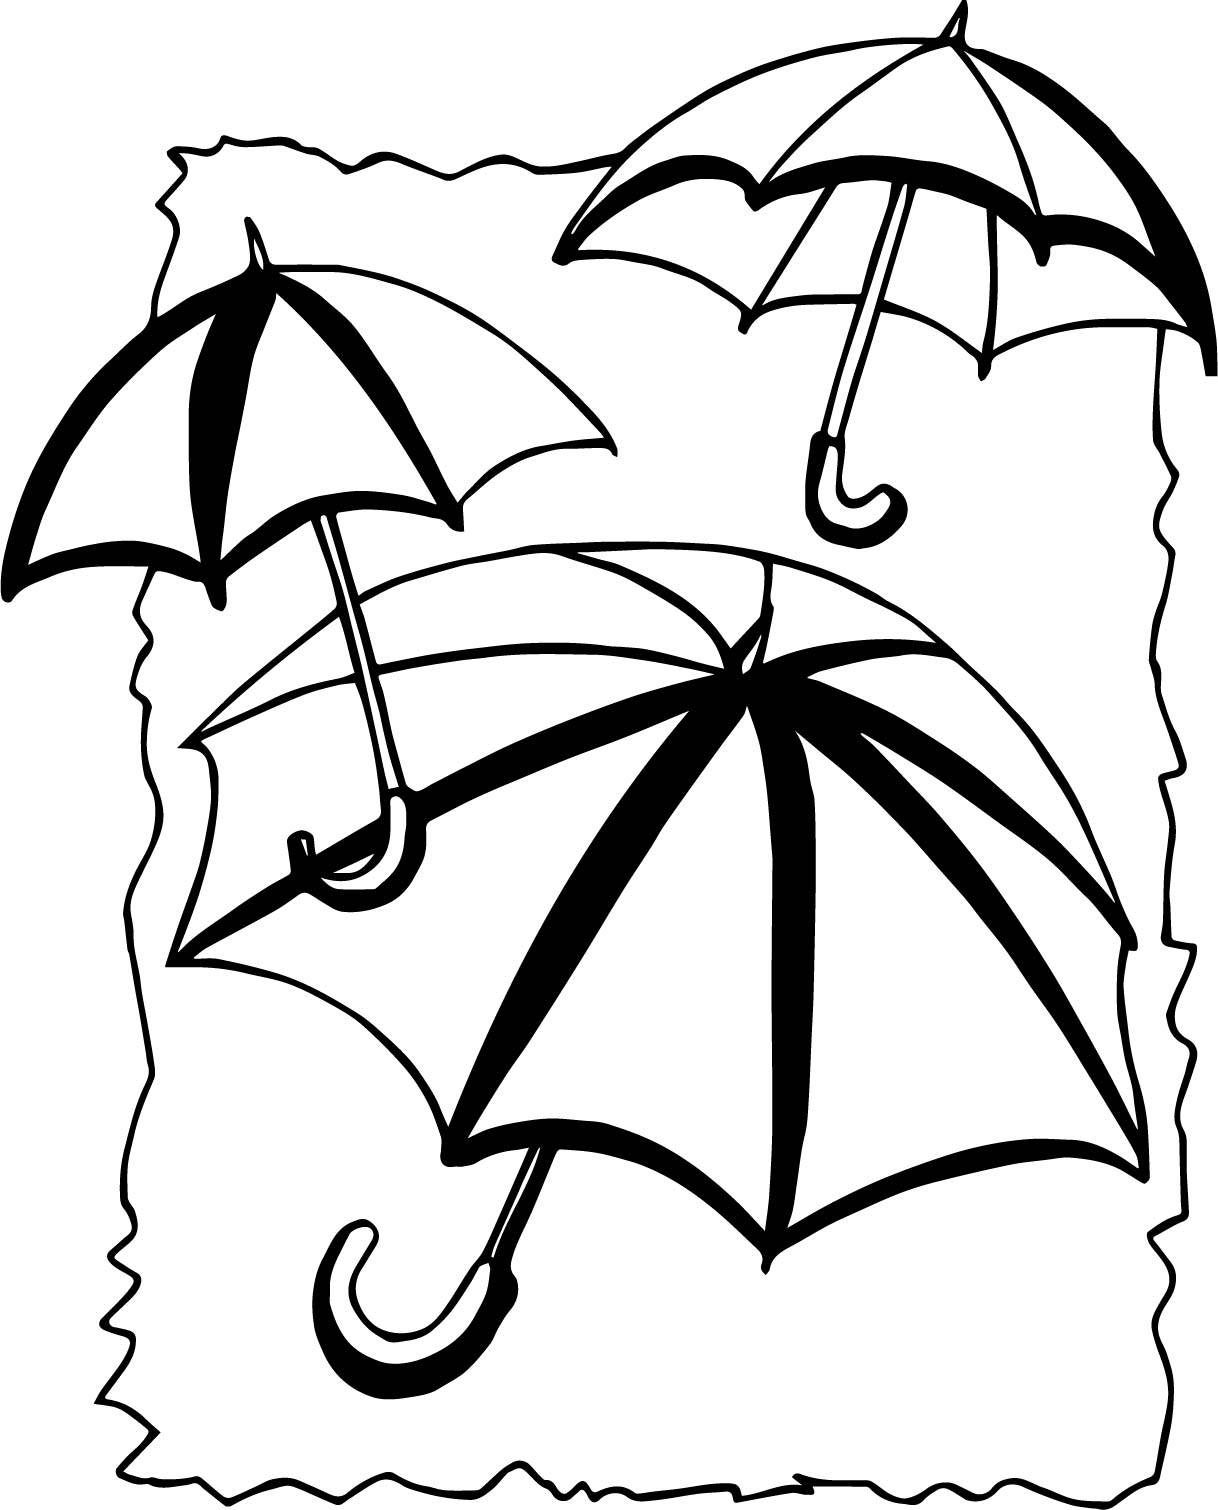 闭合的雨伞怎么画？教你简单的雨伞画法步骤！ - 知乎